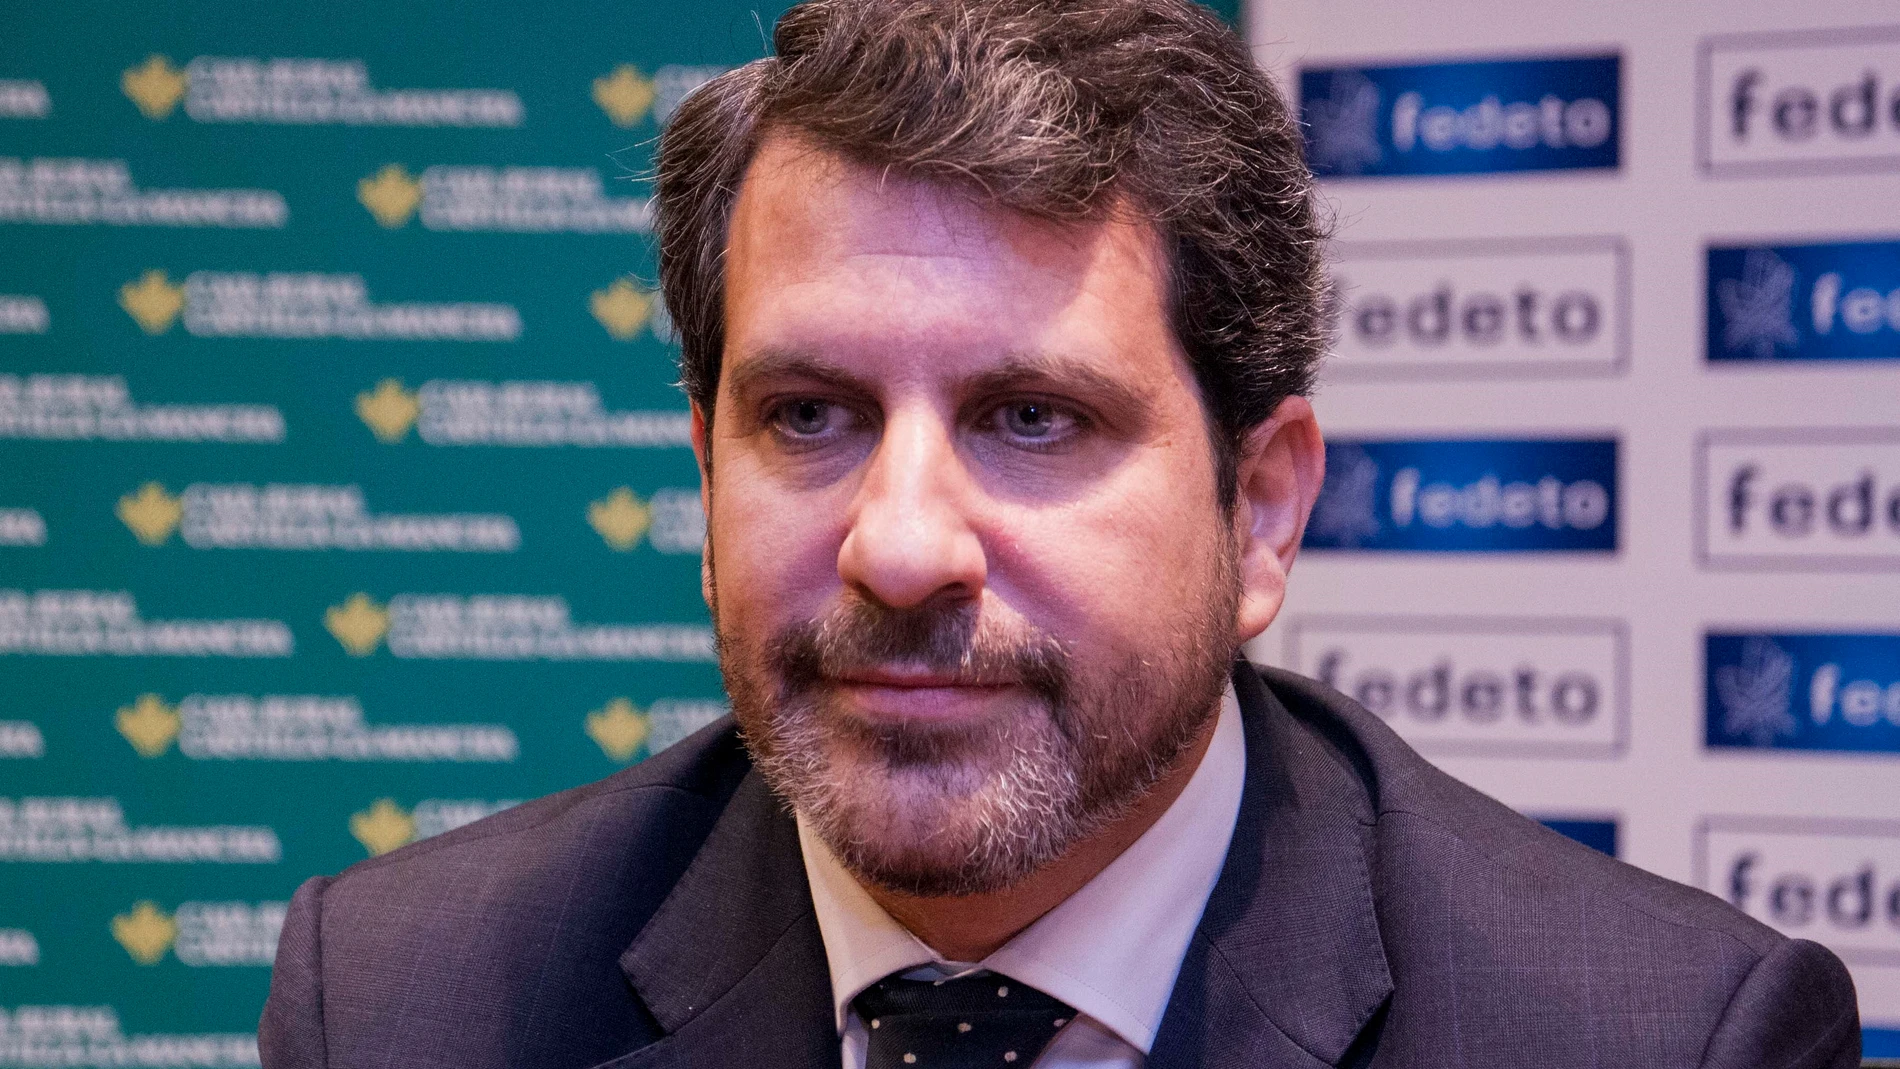 El secretario general de la Federación Empresarial Toledana Manuel Madruga